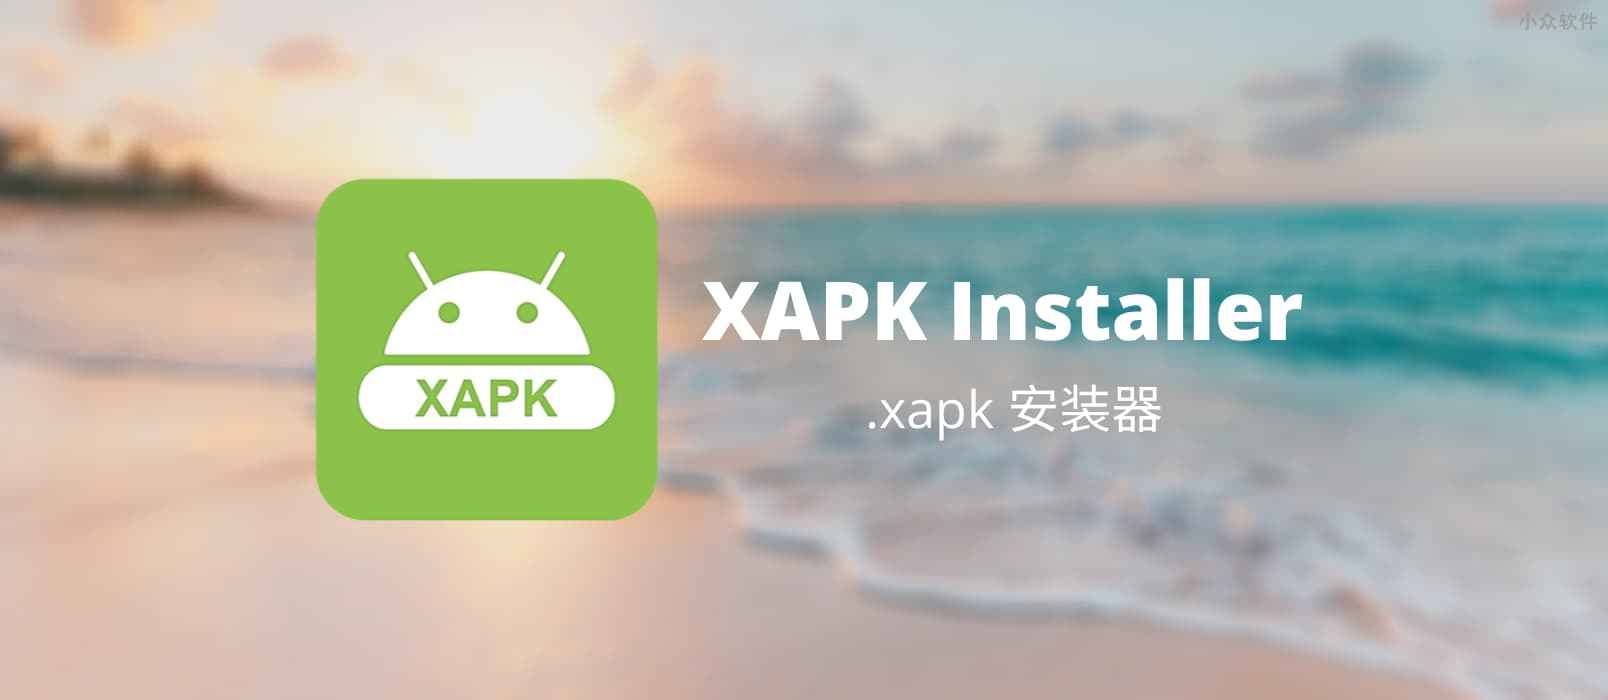 XAPK Installer – 安卓应用安装文件 .xapk 安装器[Android]